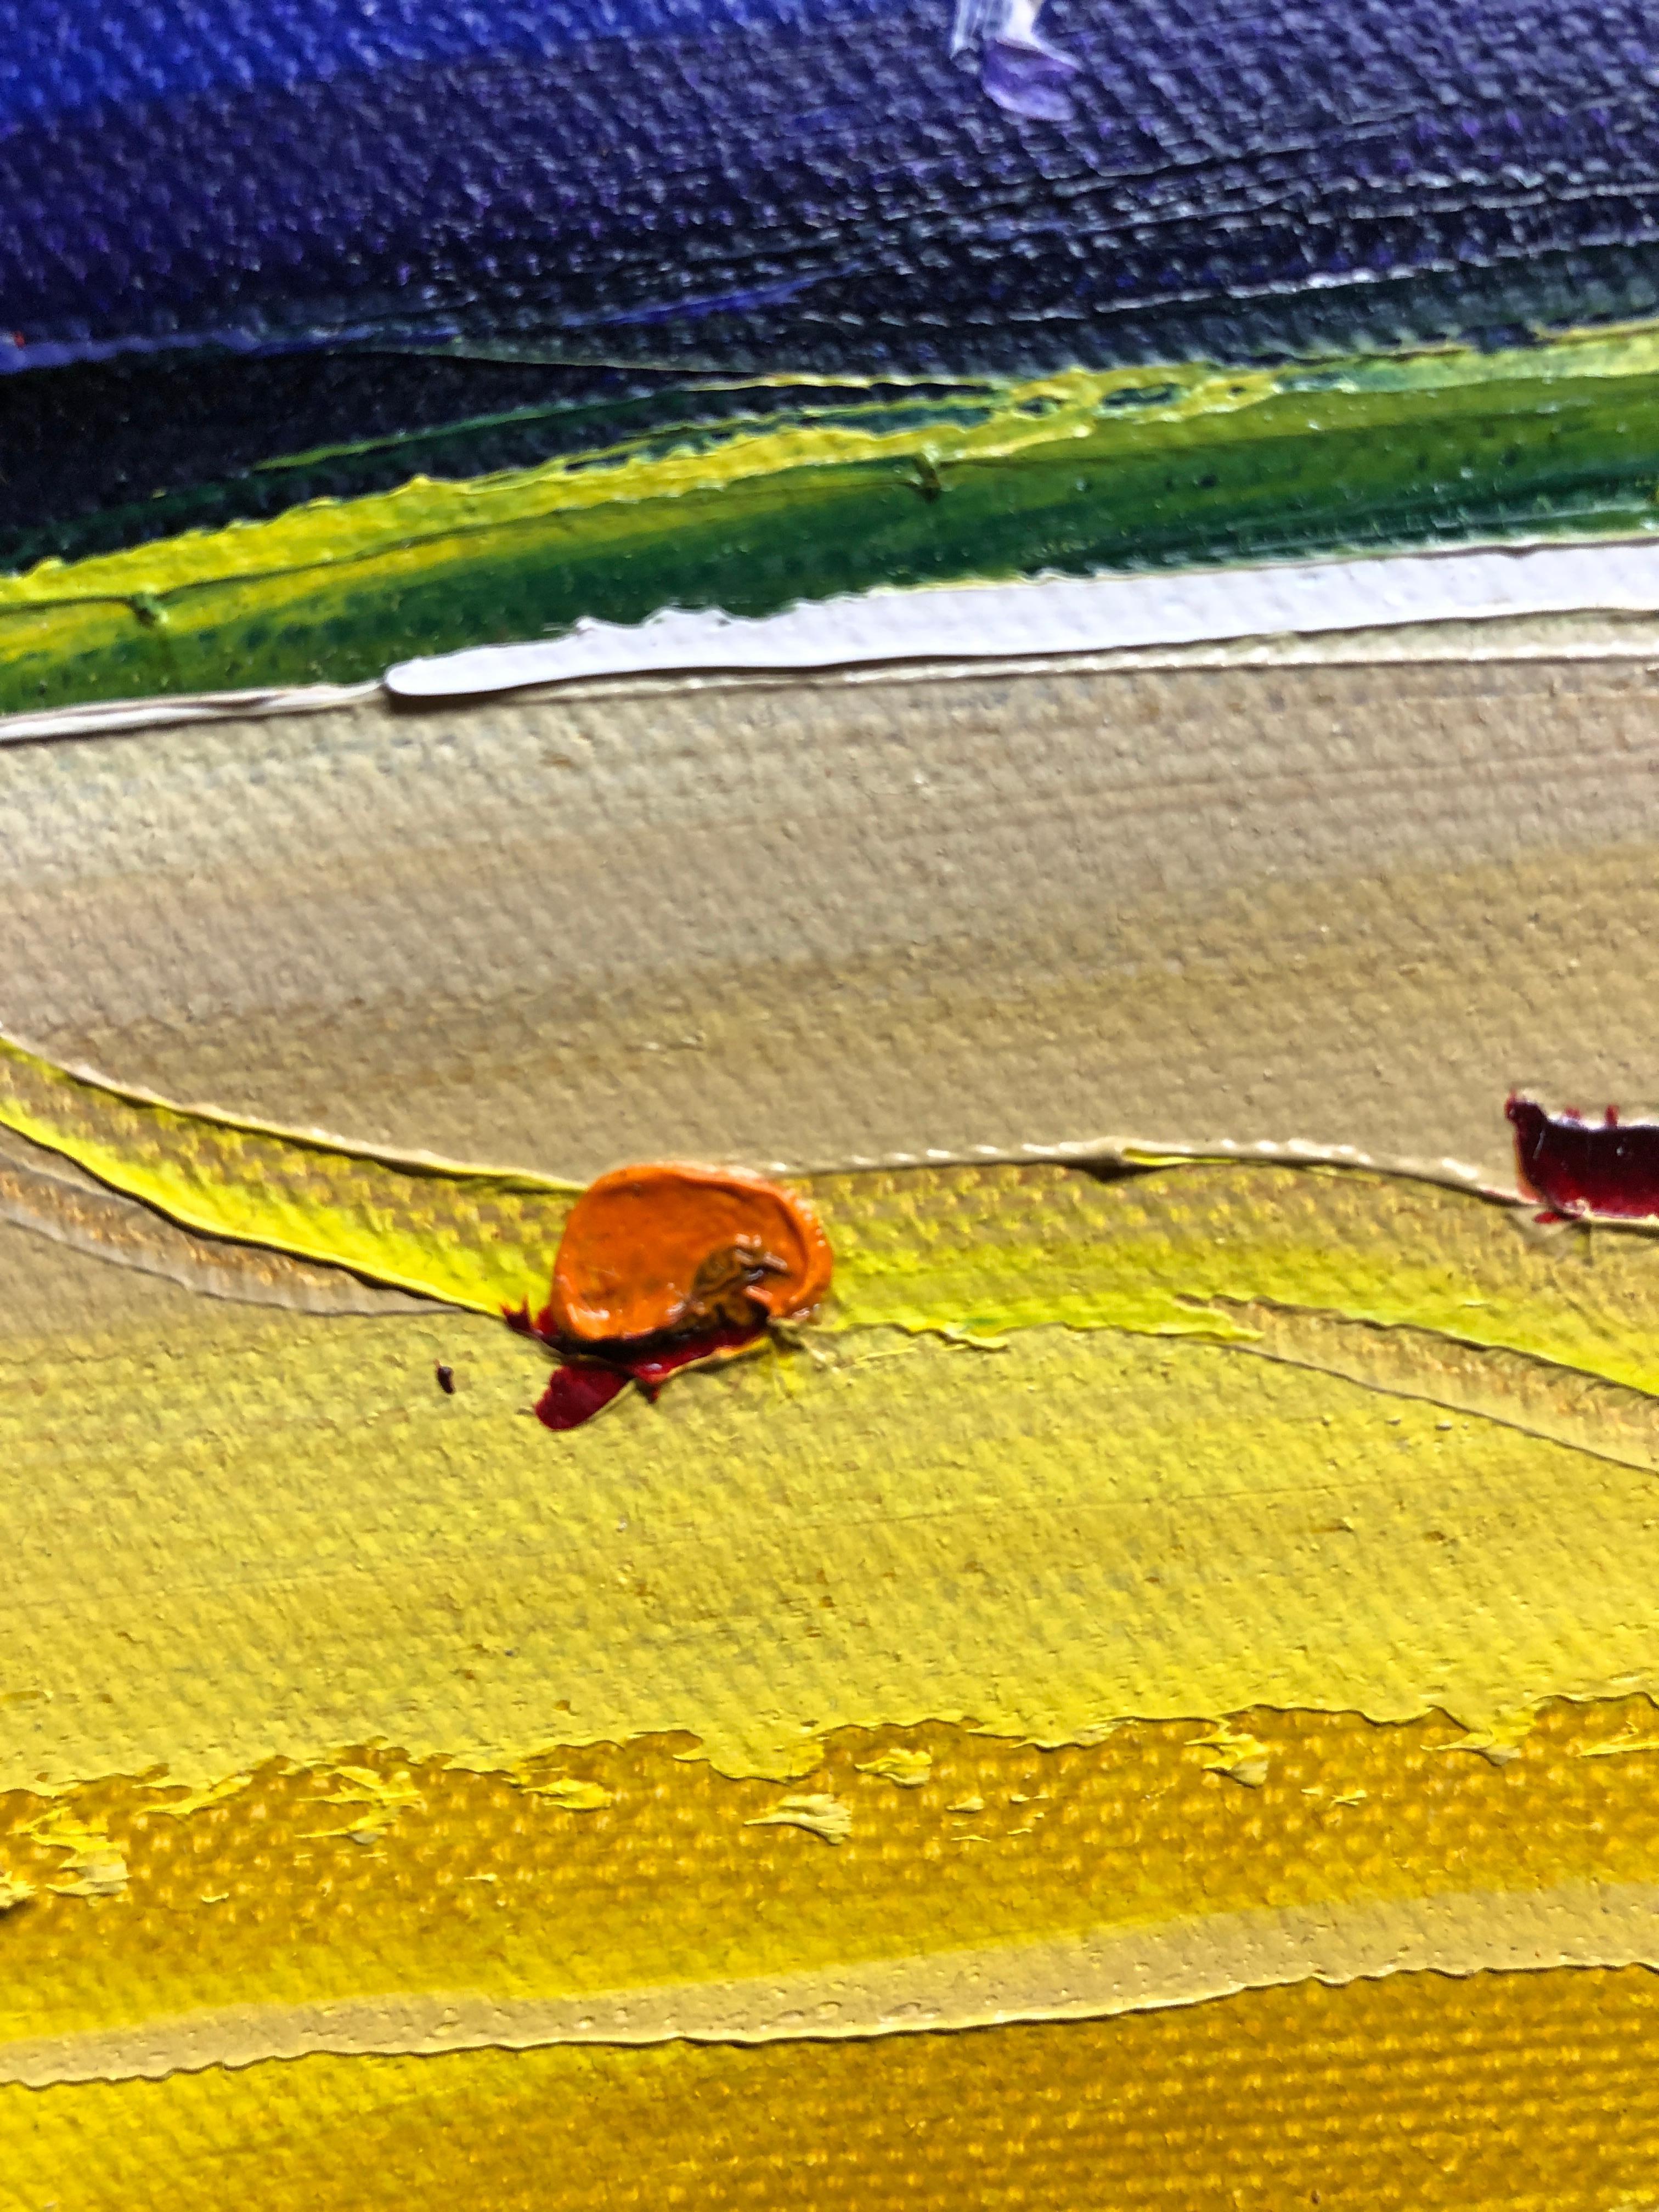 Landscape Vibrant Oil Painting Palette Knife 16x12